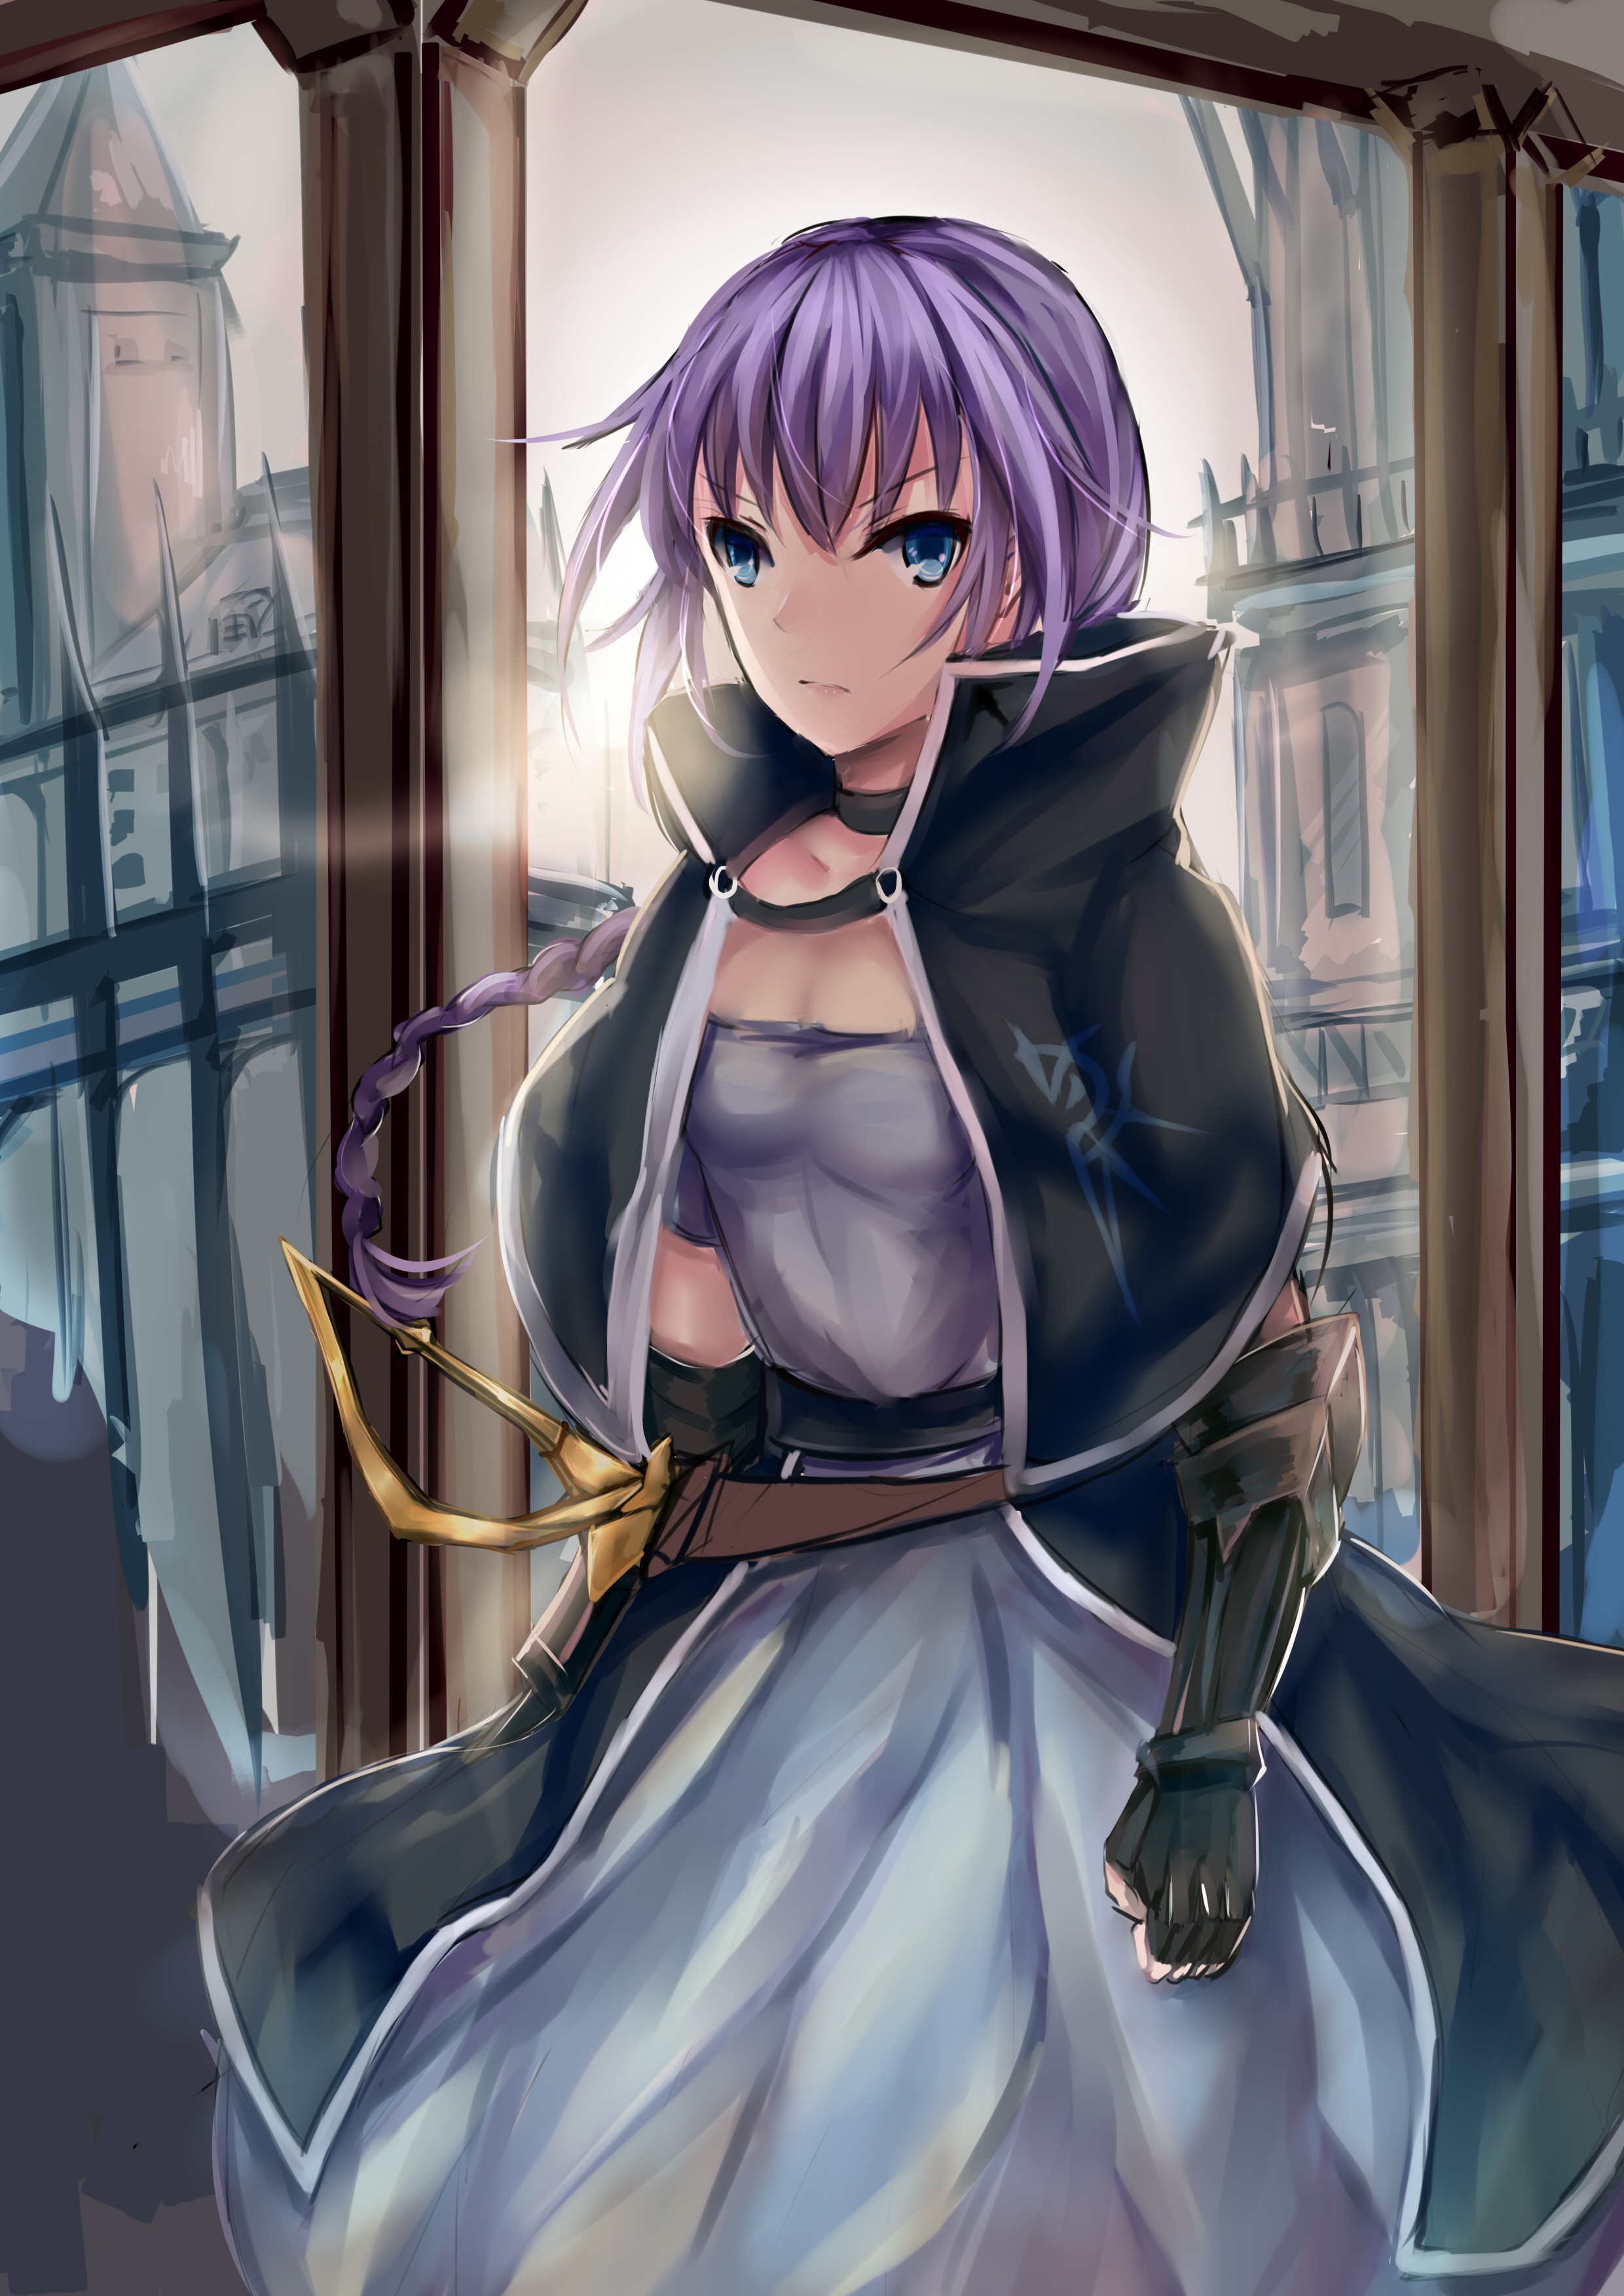 Anime 2480x3507 anime anime girls blue eyes purple hair long hair sword armor Pixiv fantasy art fantasy girl dress